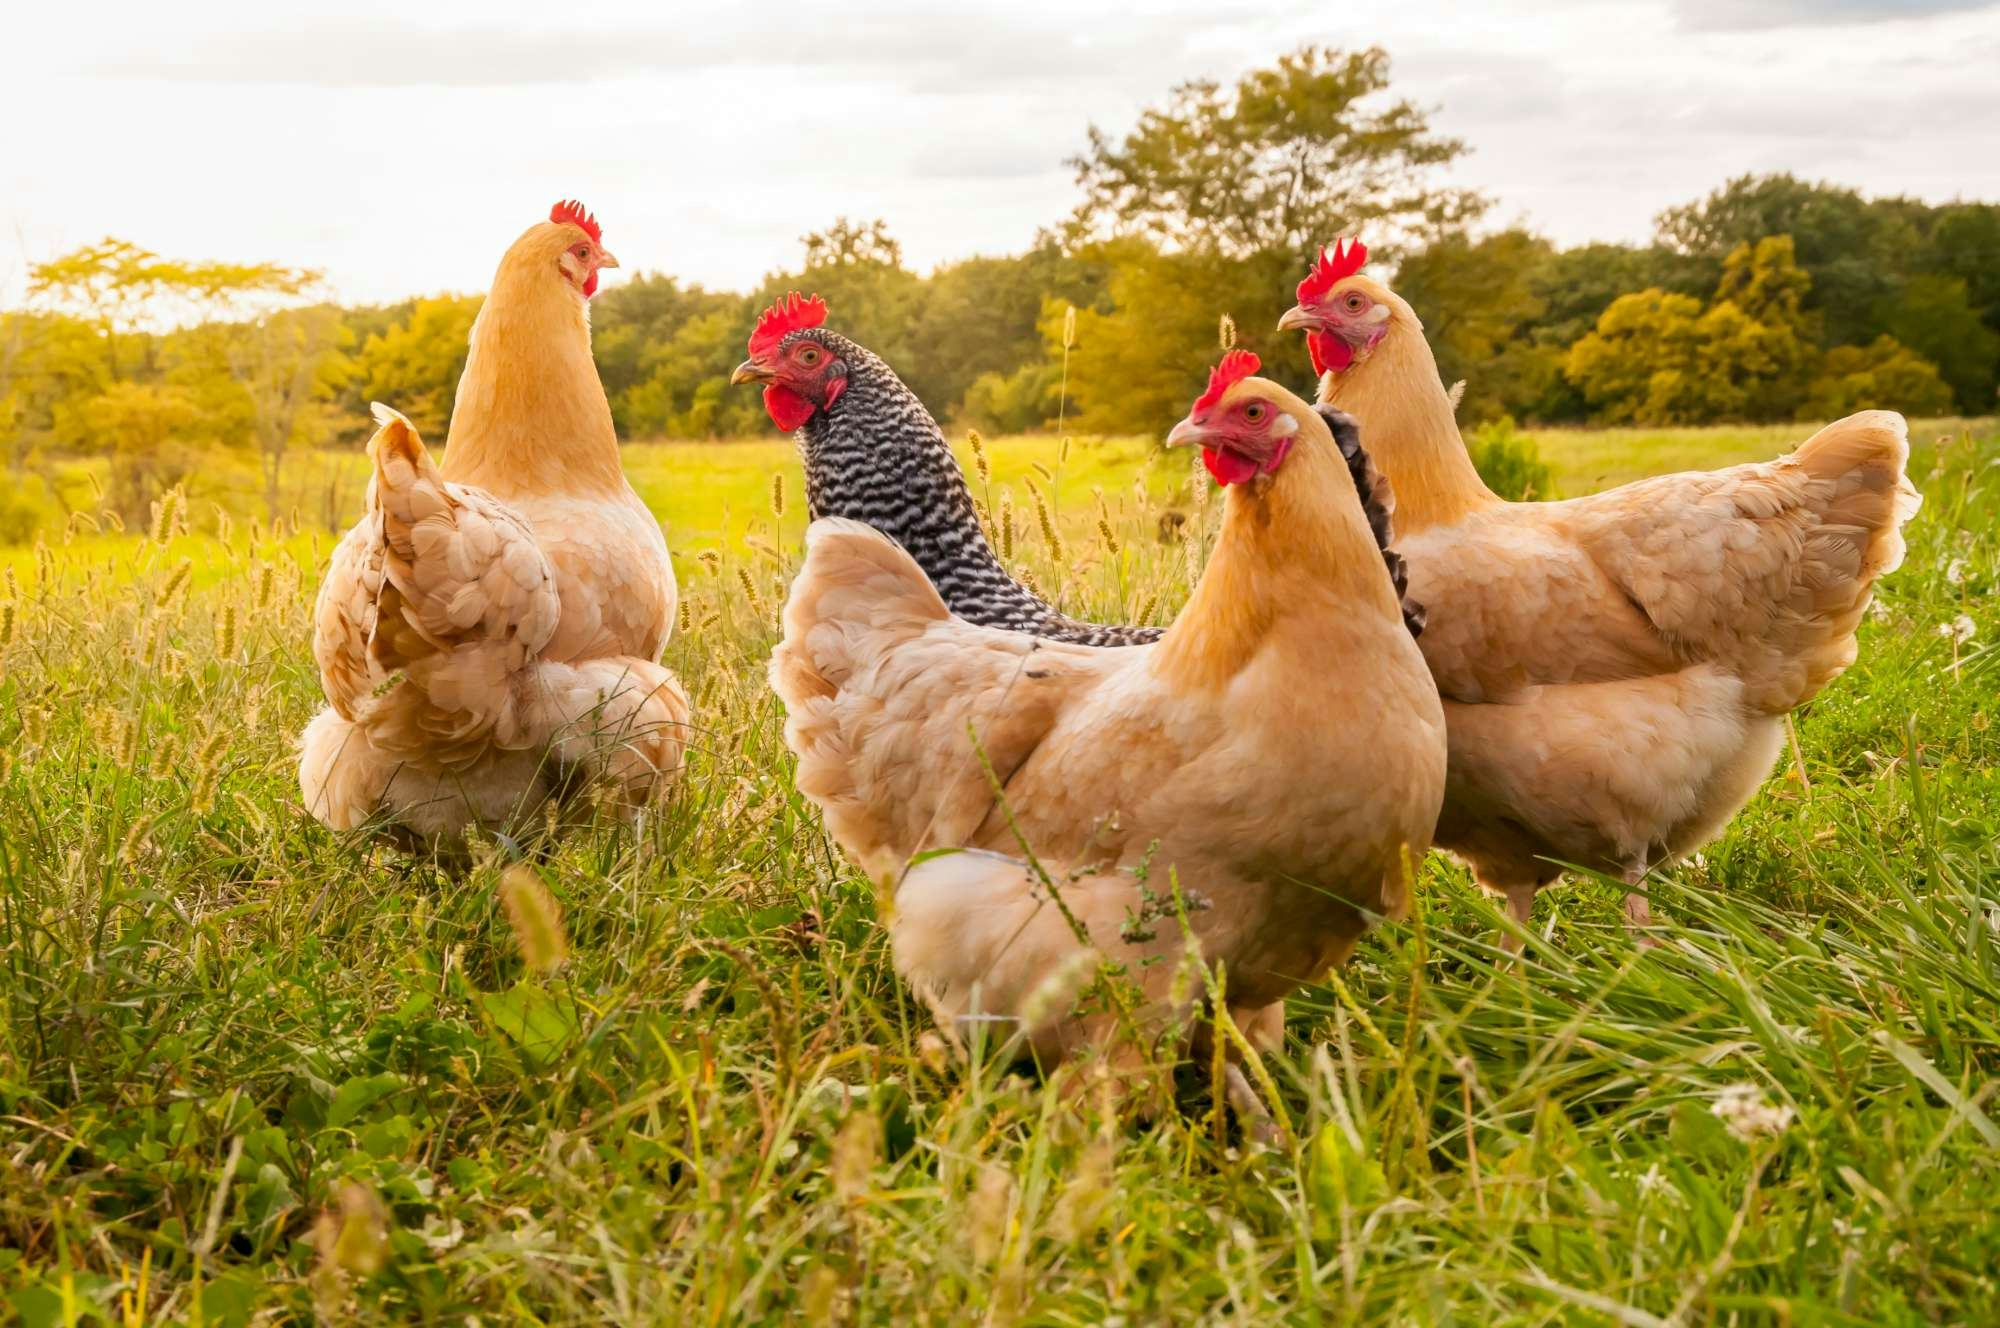 Horecagroothandels zetten grote stap voor kippenwelzijn